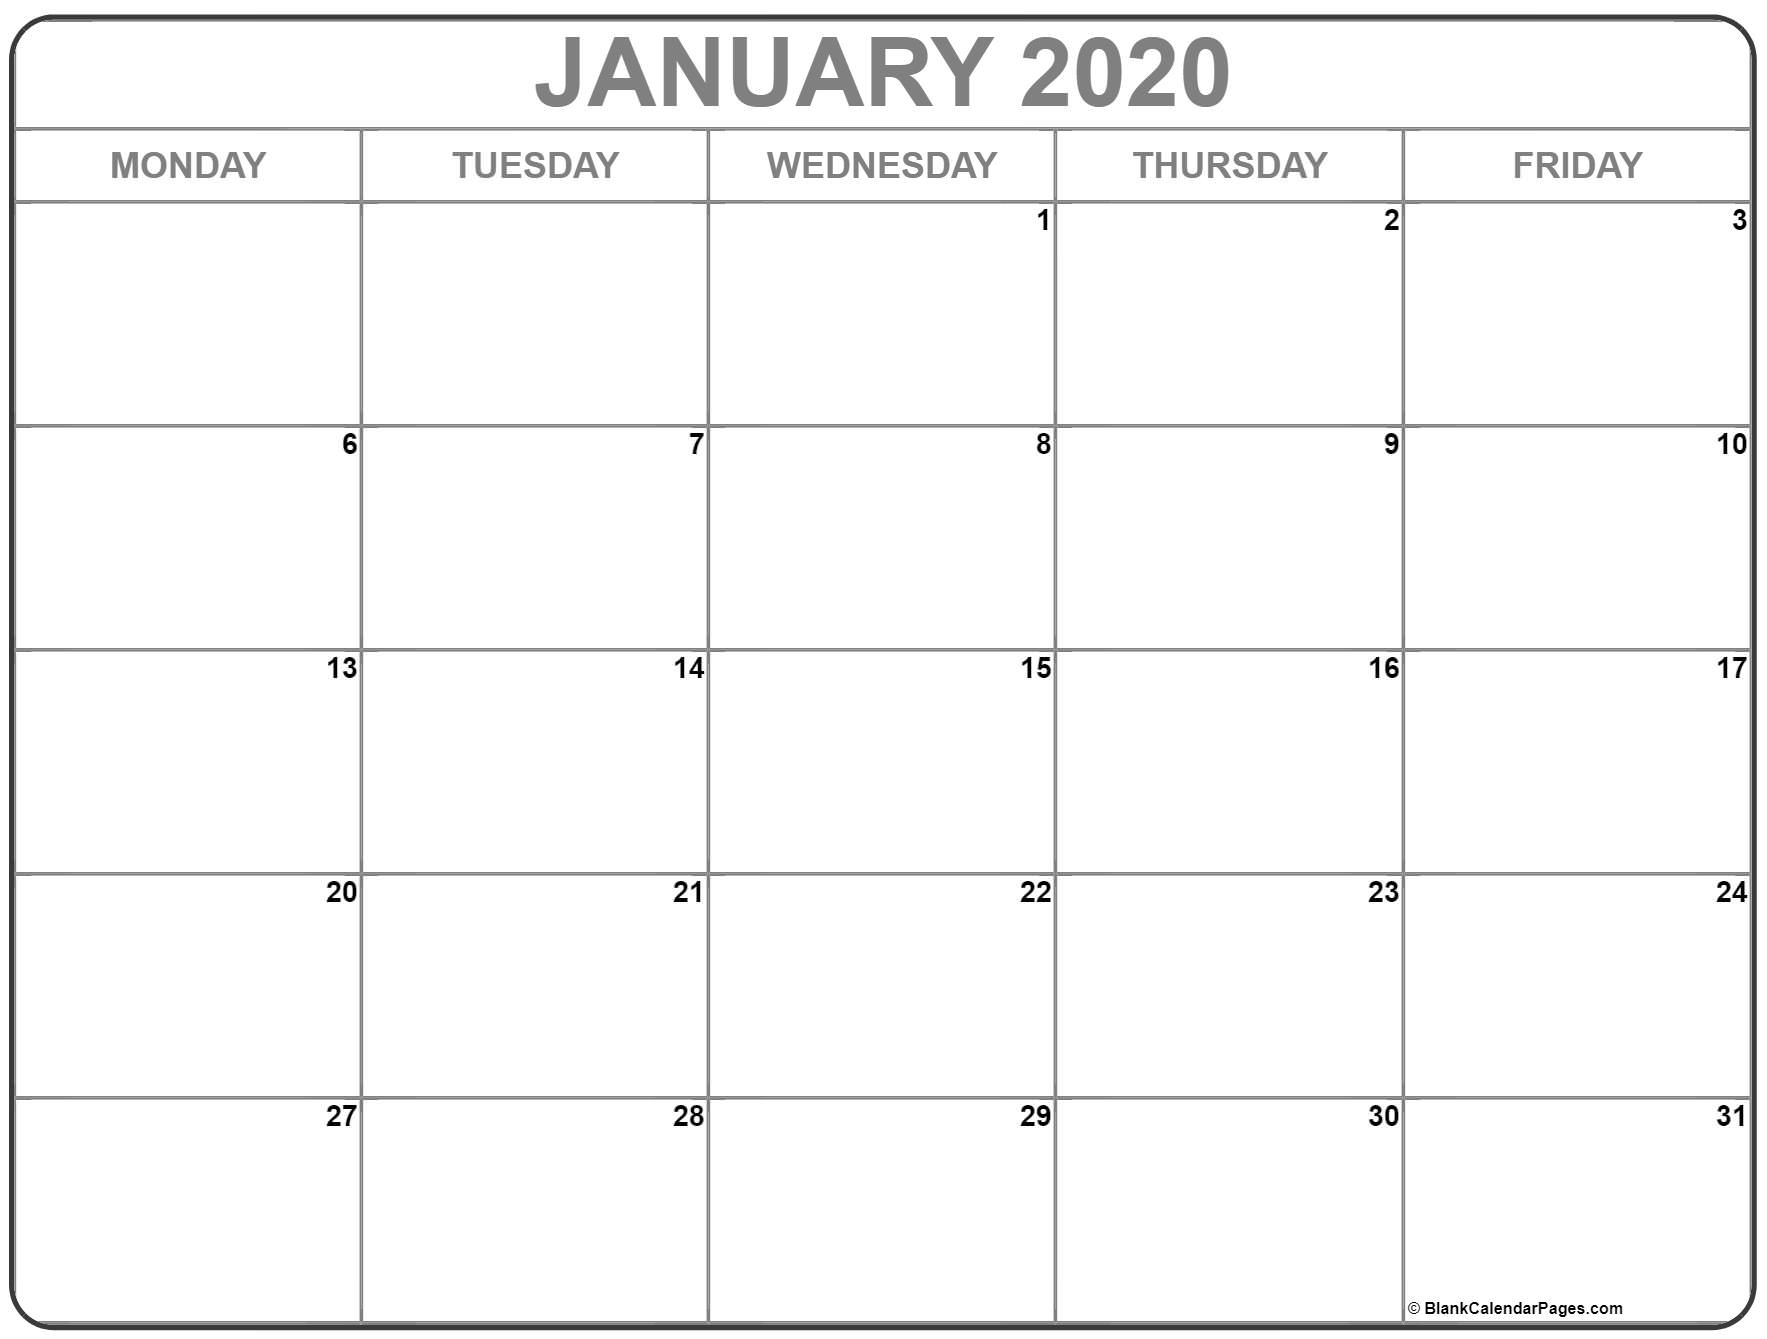 January 2020 Monday Calendar | Monday To Sunday regarding Calendar Monday Through Friday